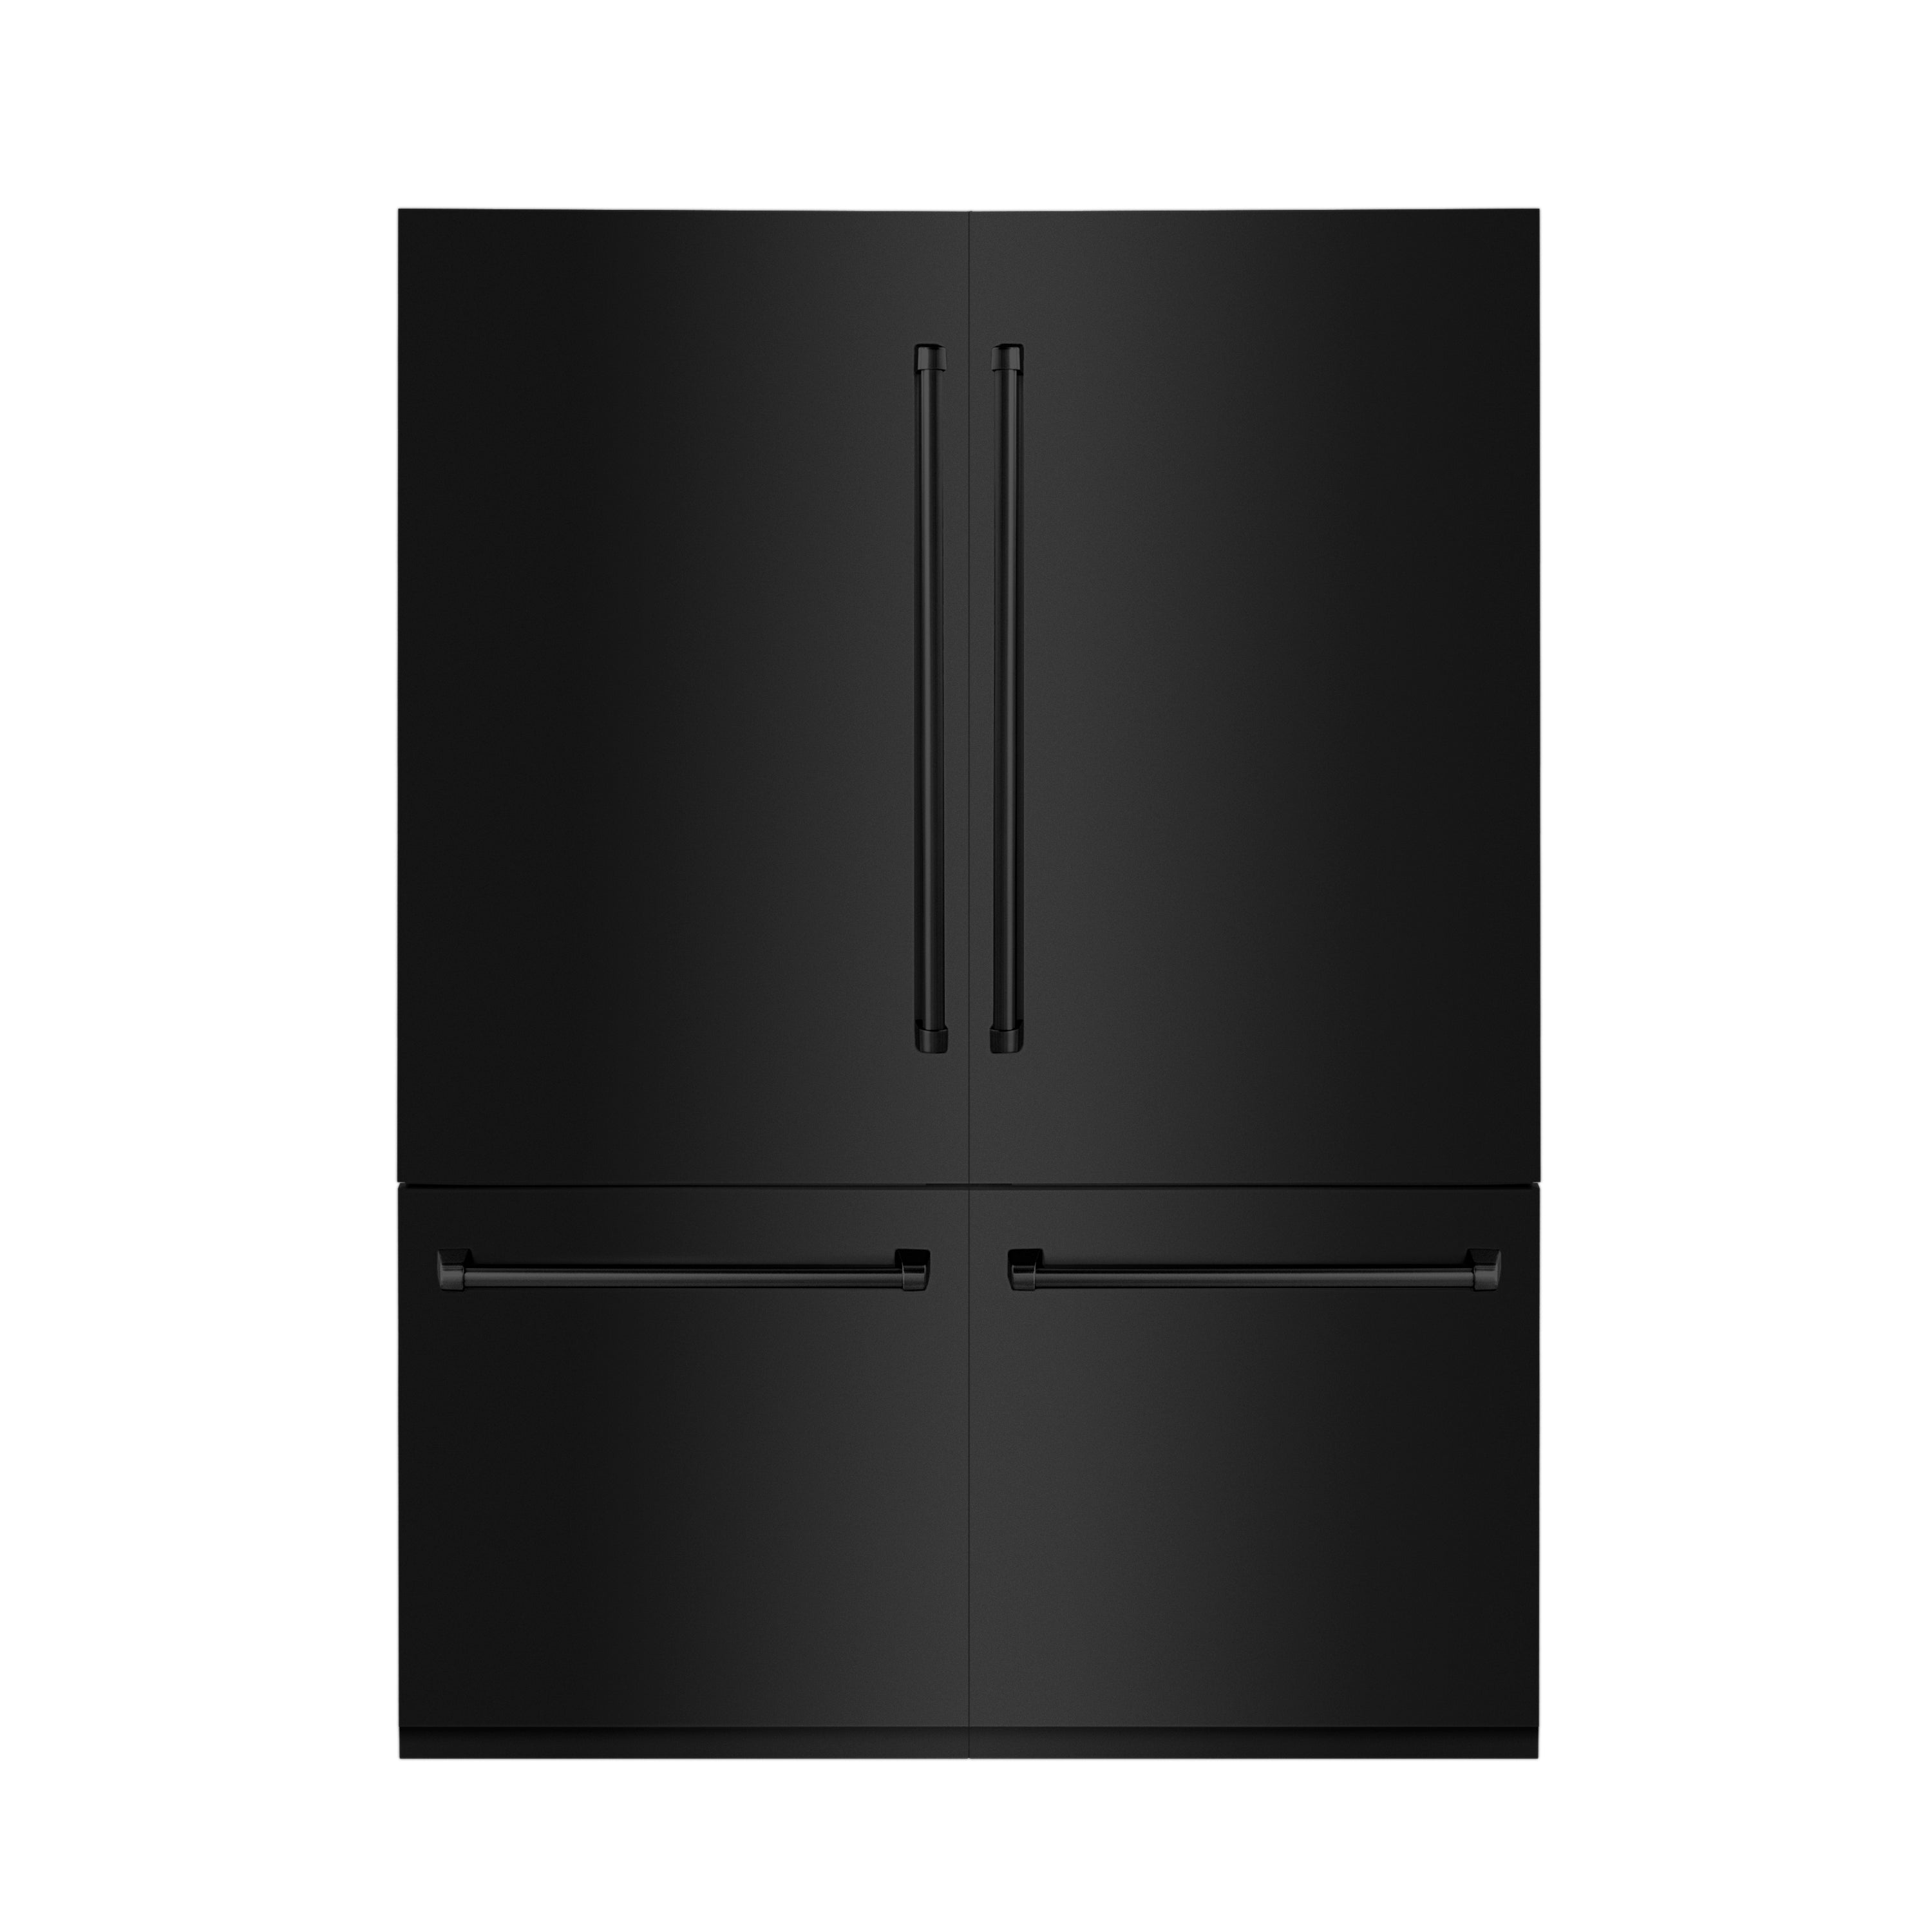 ZLINE 60" 32.2 cu. ft. Built-In 4-Door French Door Refrigerator with Internal Water and Ice Dispenser in Black Stainless Steel